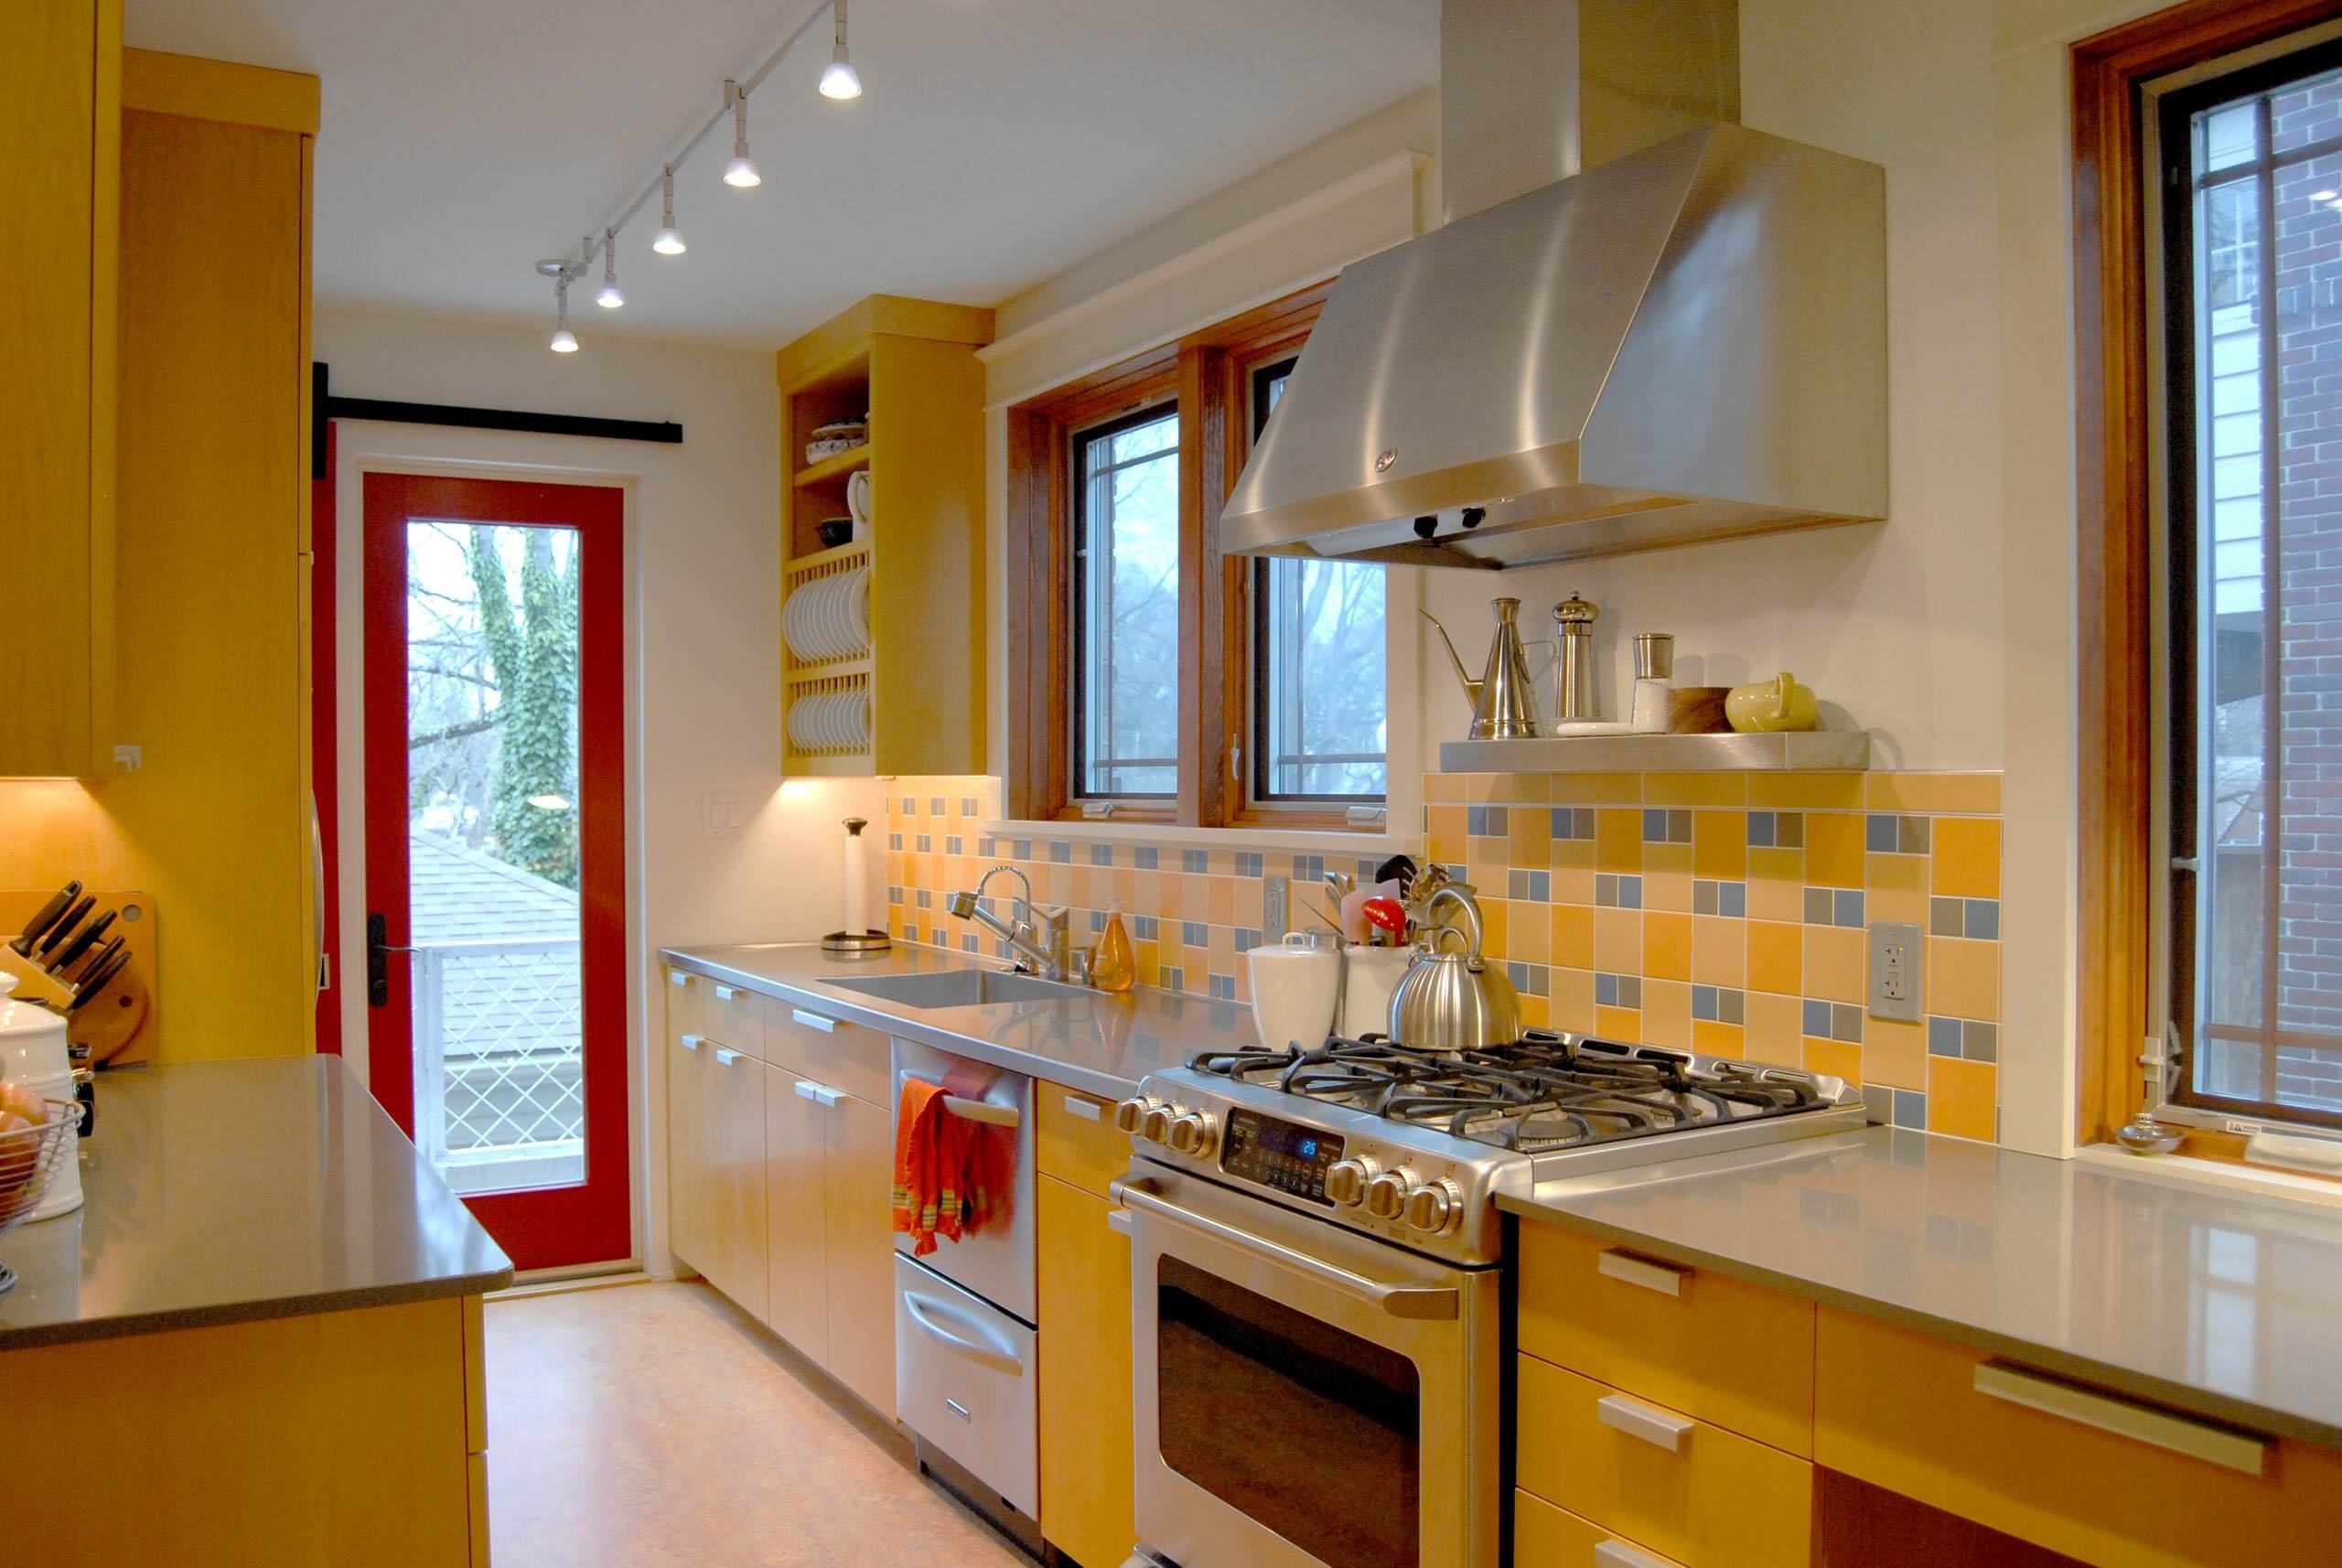 Ремонт кухни качественно. Желтая кухня в интерьере. Кухня в желтом цвете. Кухни цветовые решения. Желтые стены на кухне.